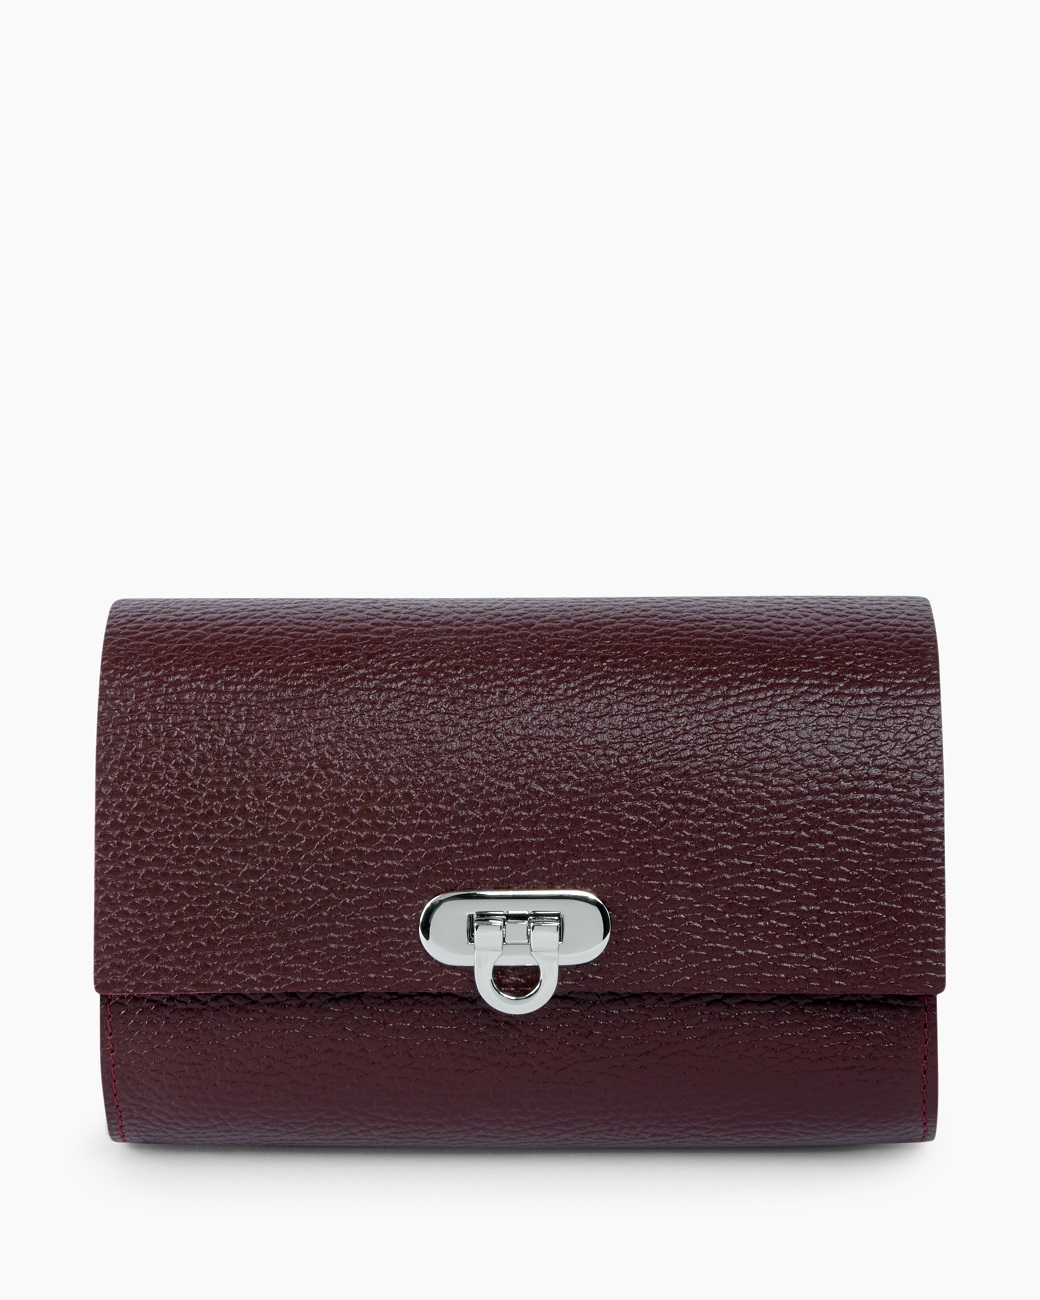 Кожаная женская поясная сумка бордовая A008 burgundy mini grain